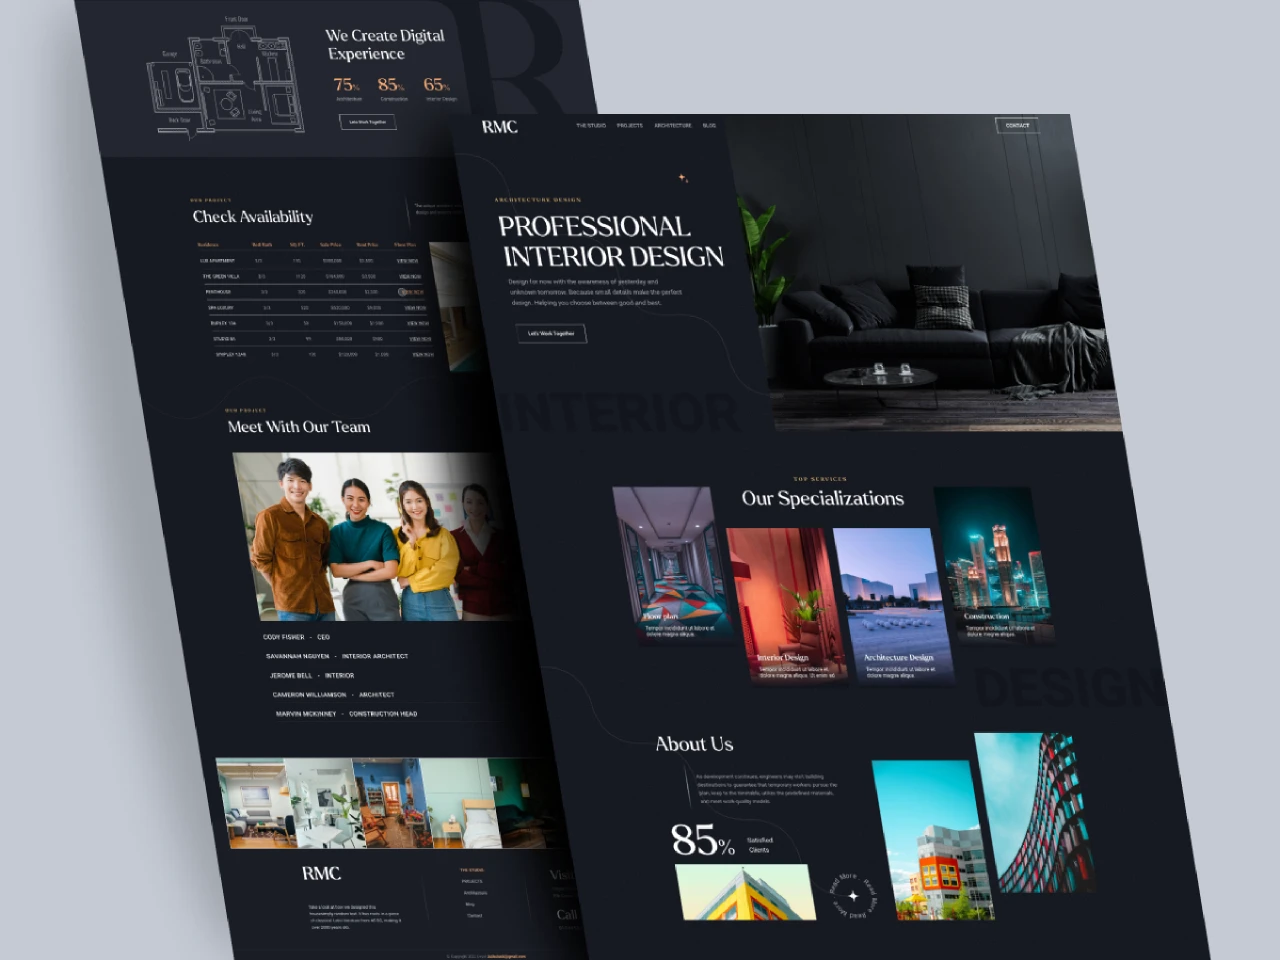 Architecture interior design studio website for Figma and Adobe XD